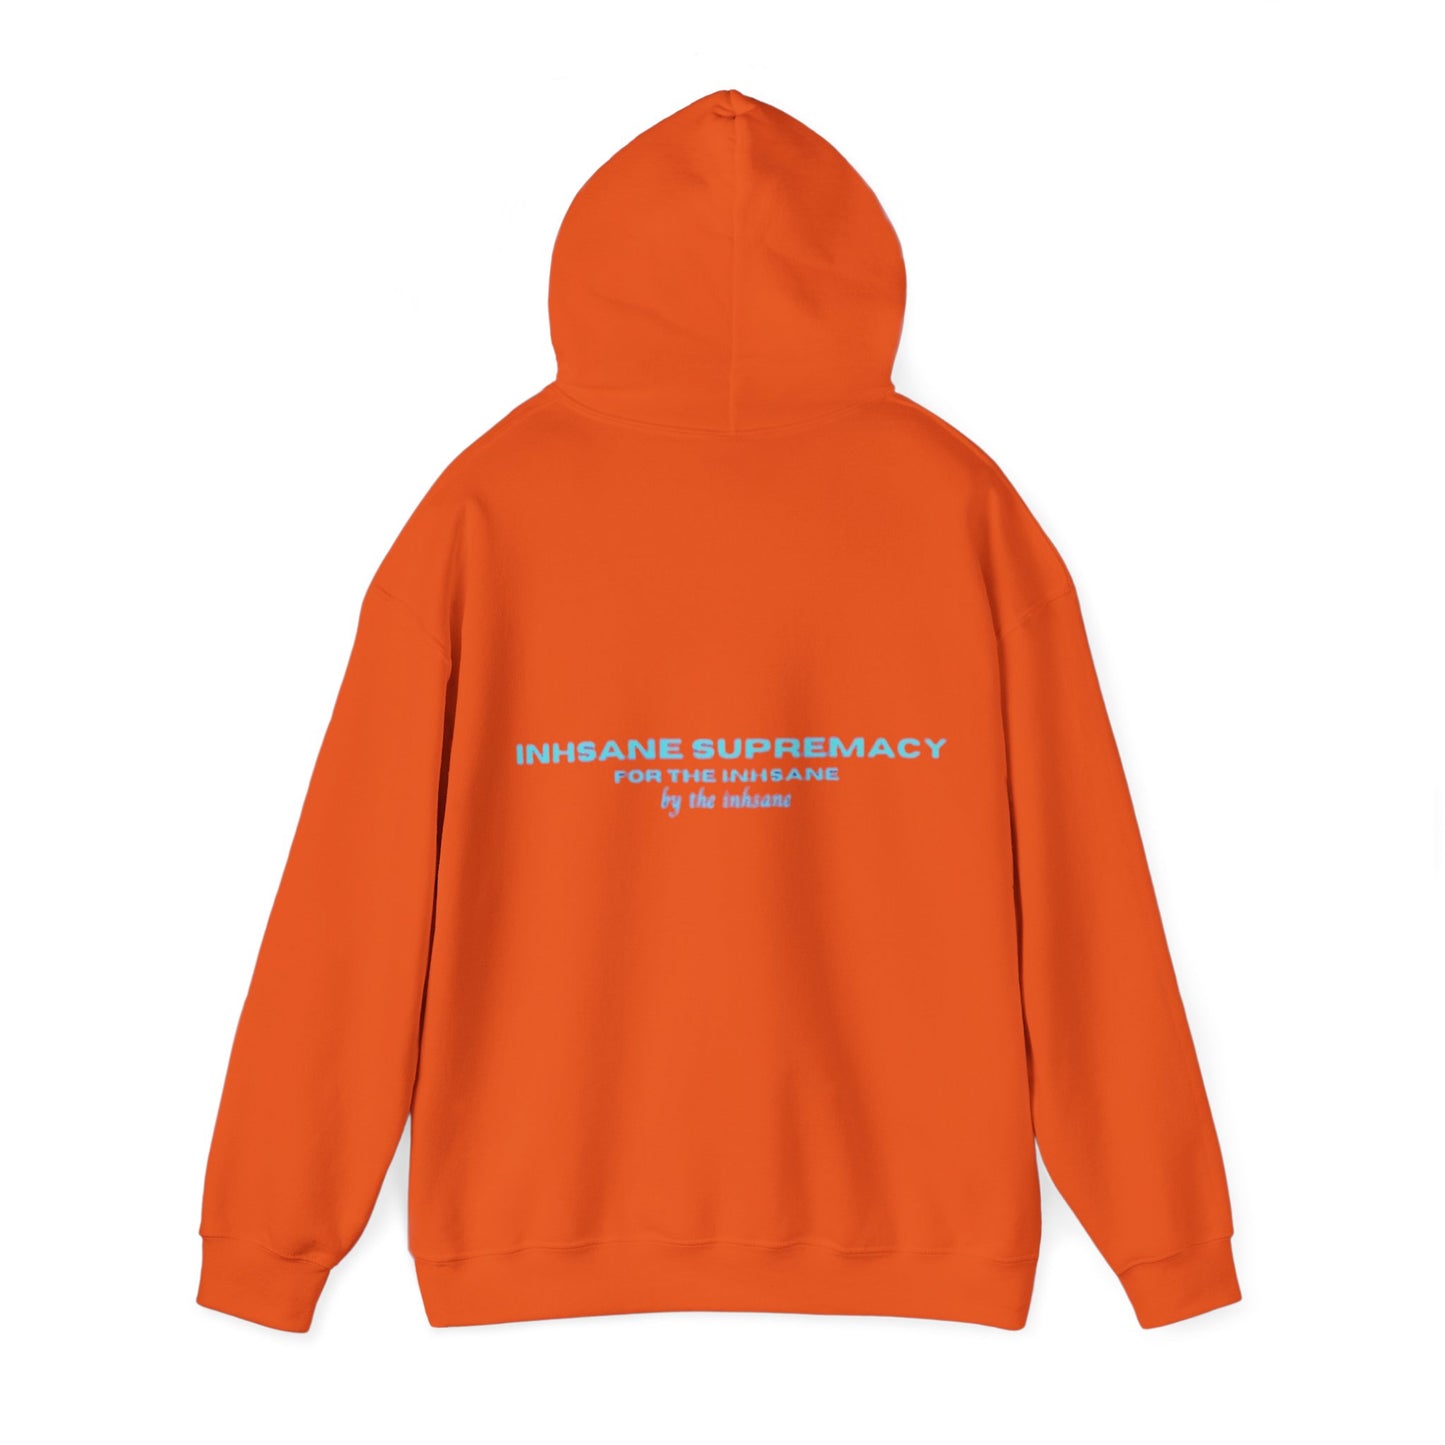 inhsane 'revolution' supremacy hoodie